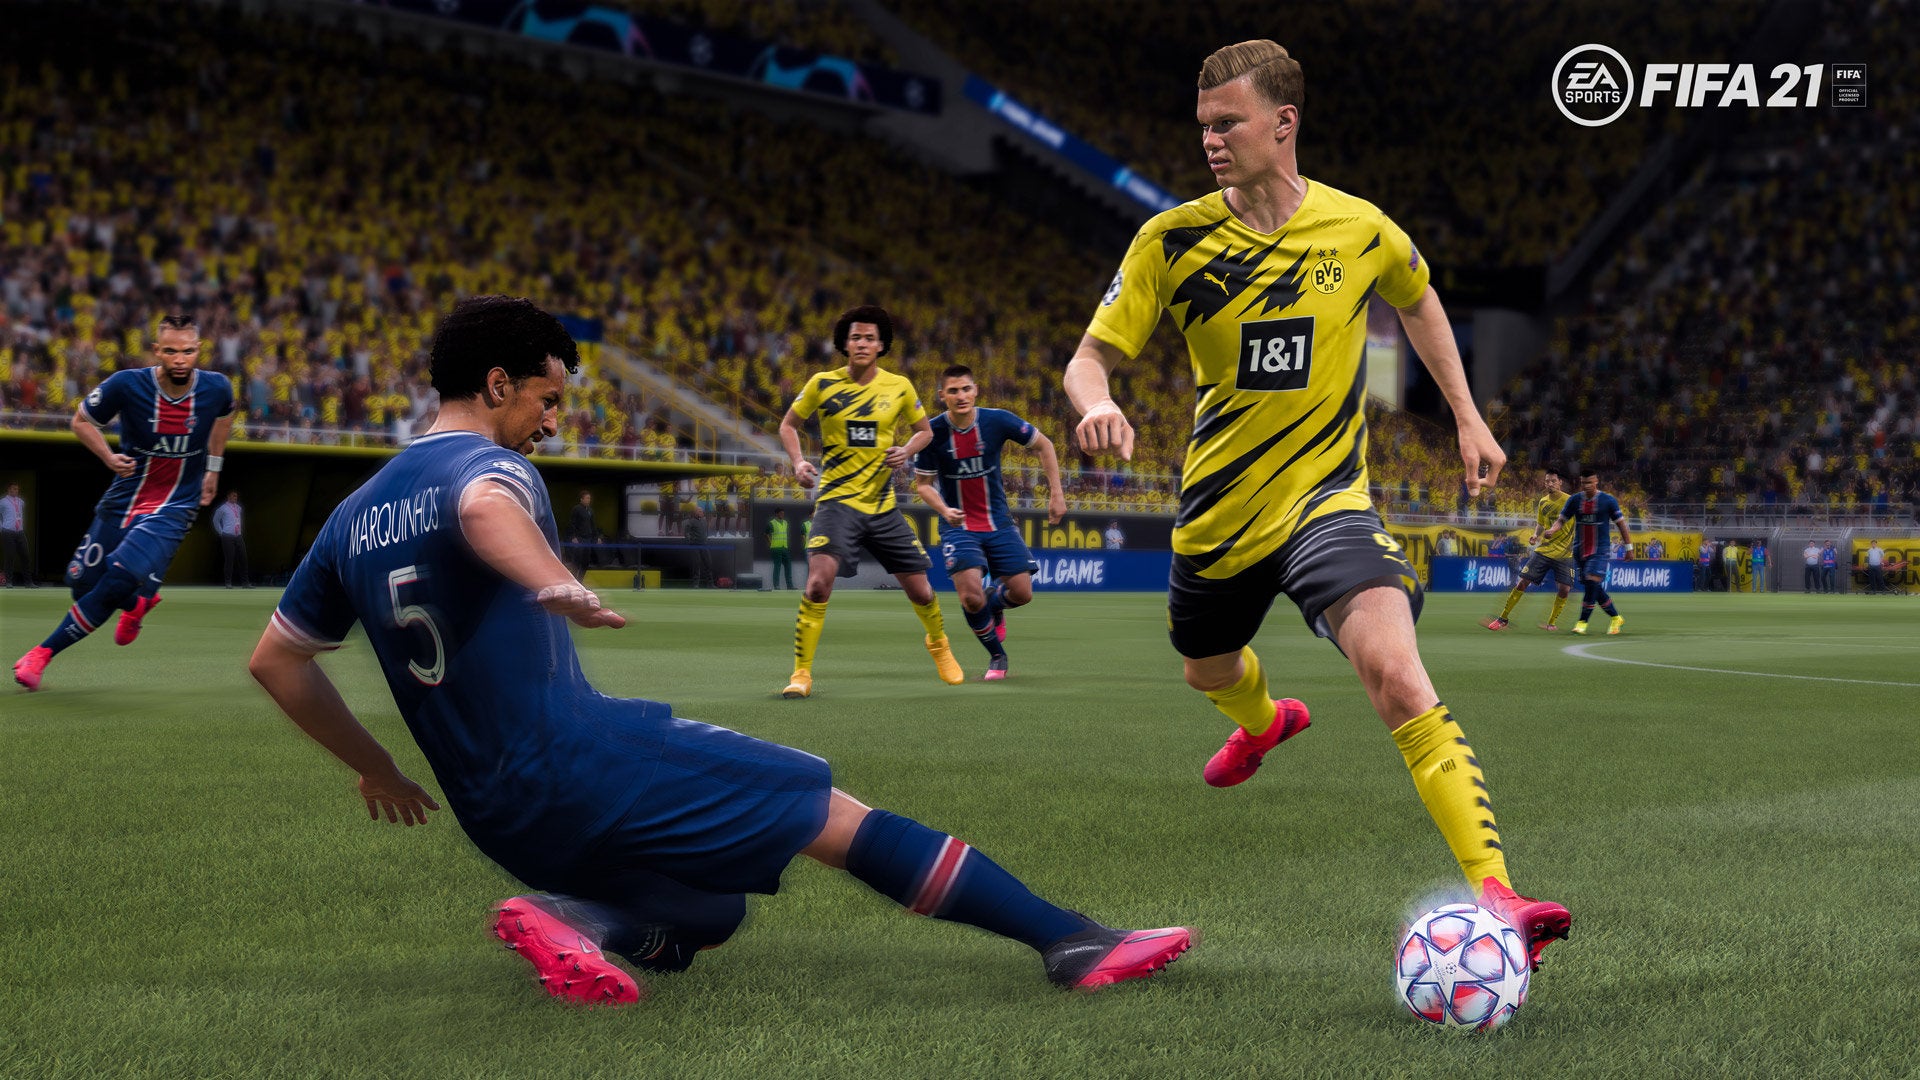 Imagen para FIFA 21 se mantiene líder en ventas en UK